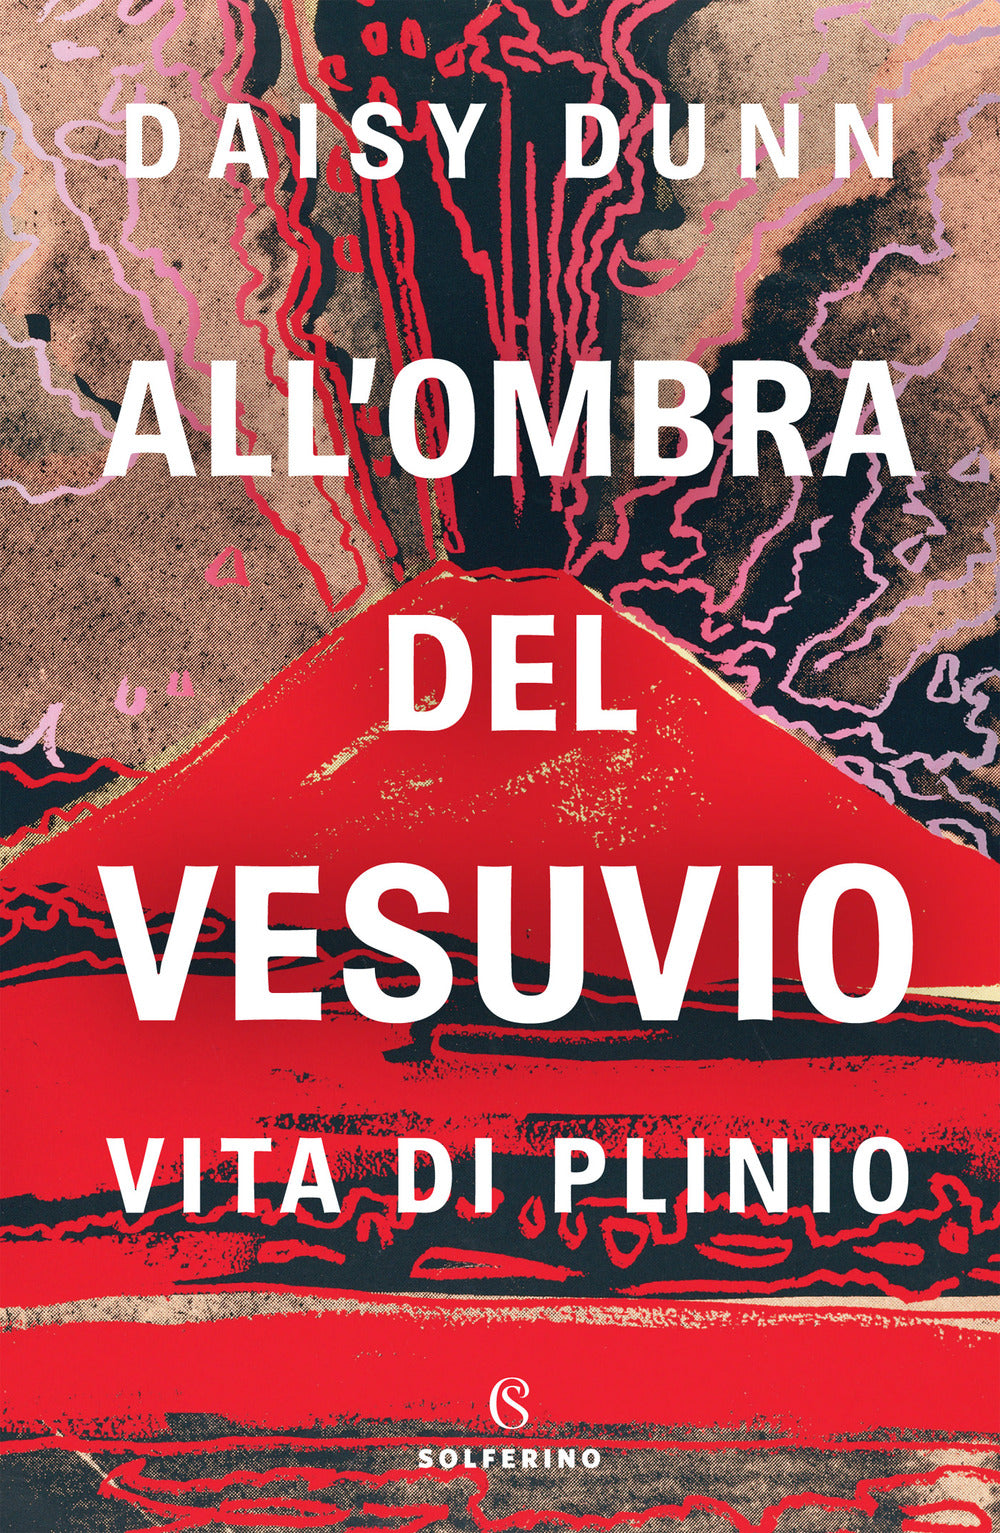 All'ombra del Vesuvio. Vita di Plinio.